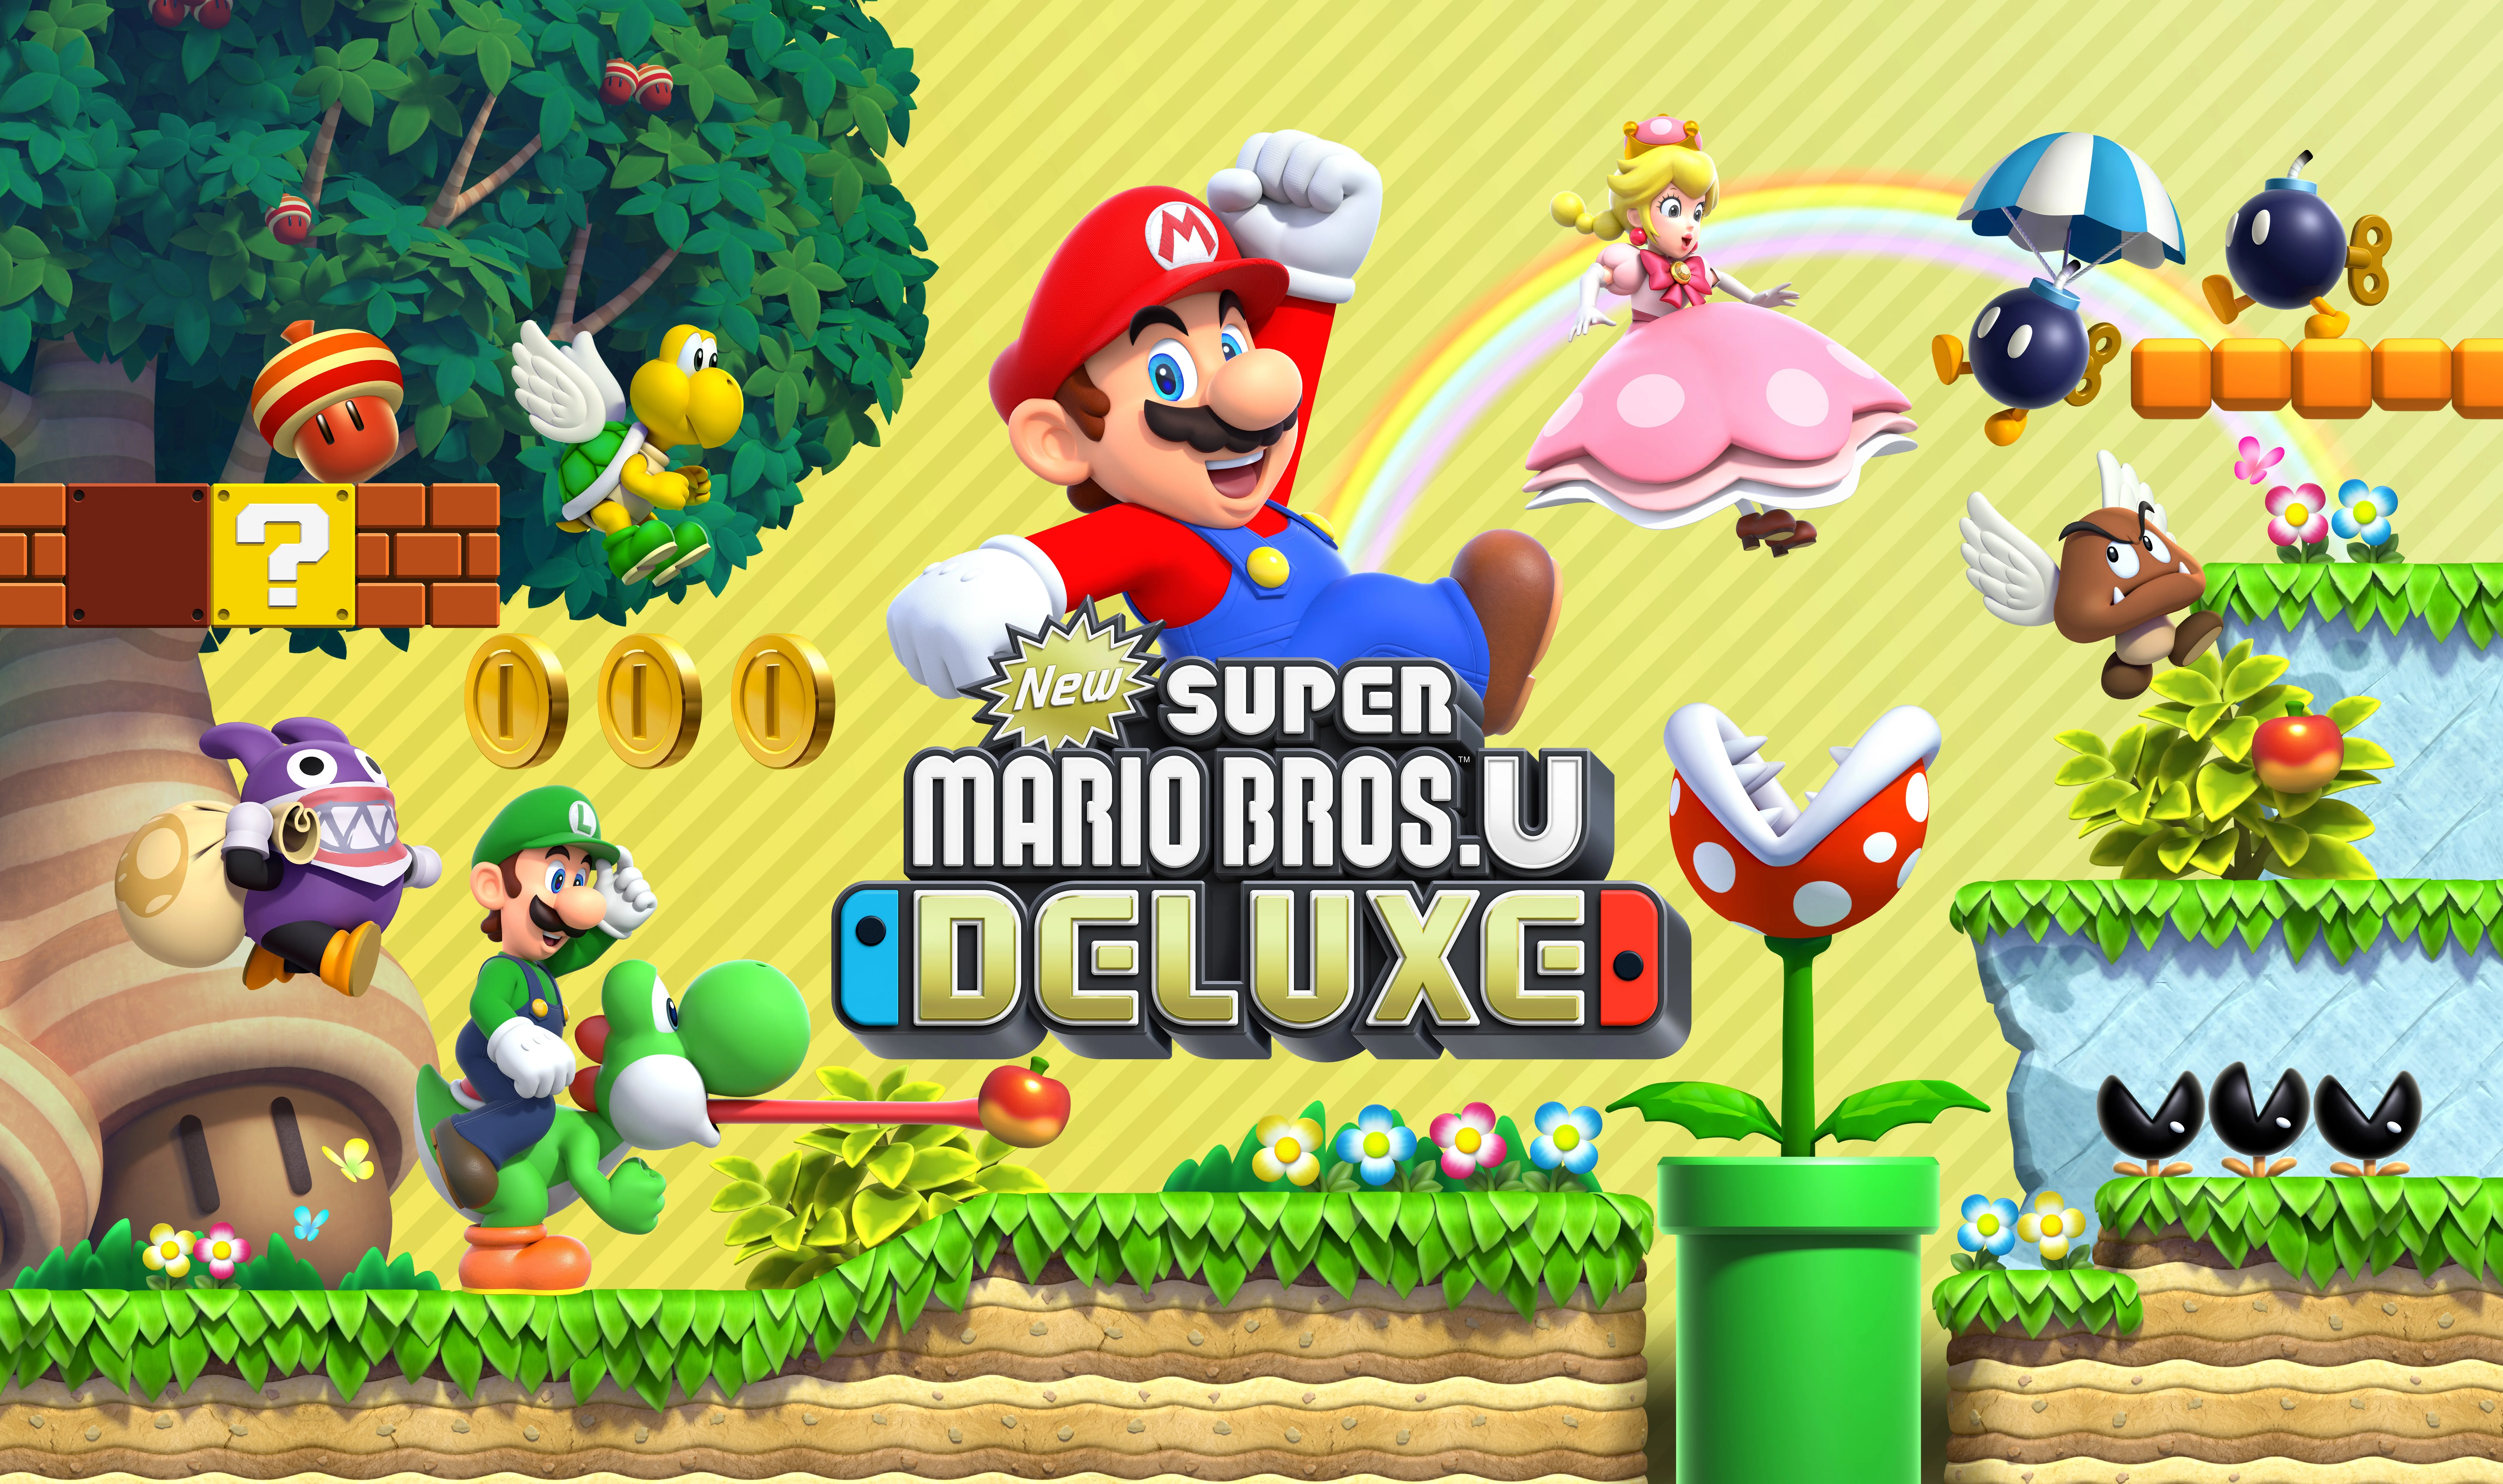 New Super Mario Bros. U Deluxe. Вечная классика на актуальной консоли - изображение обложка